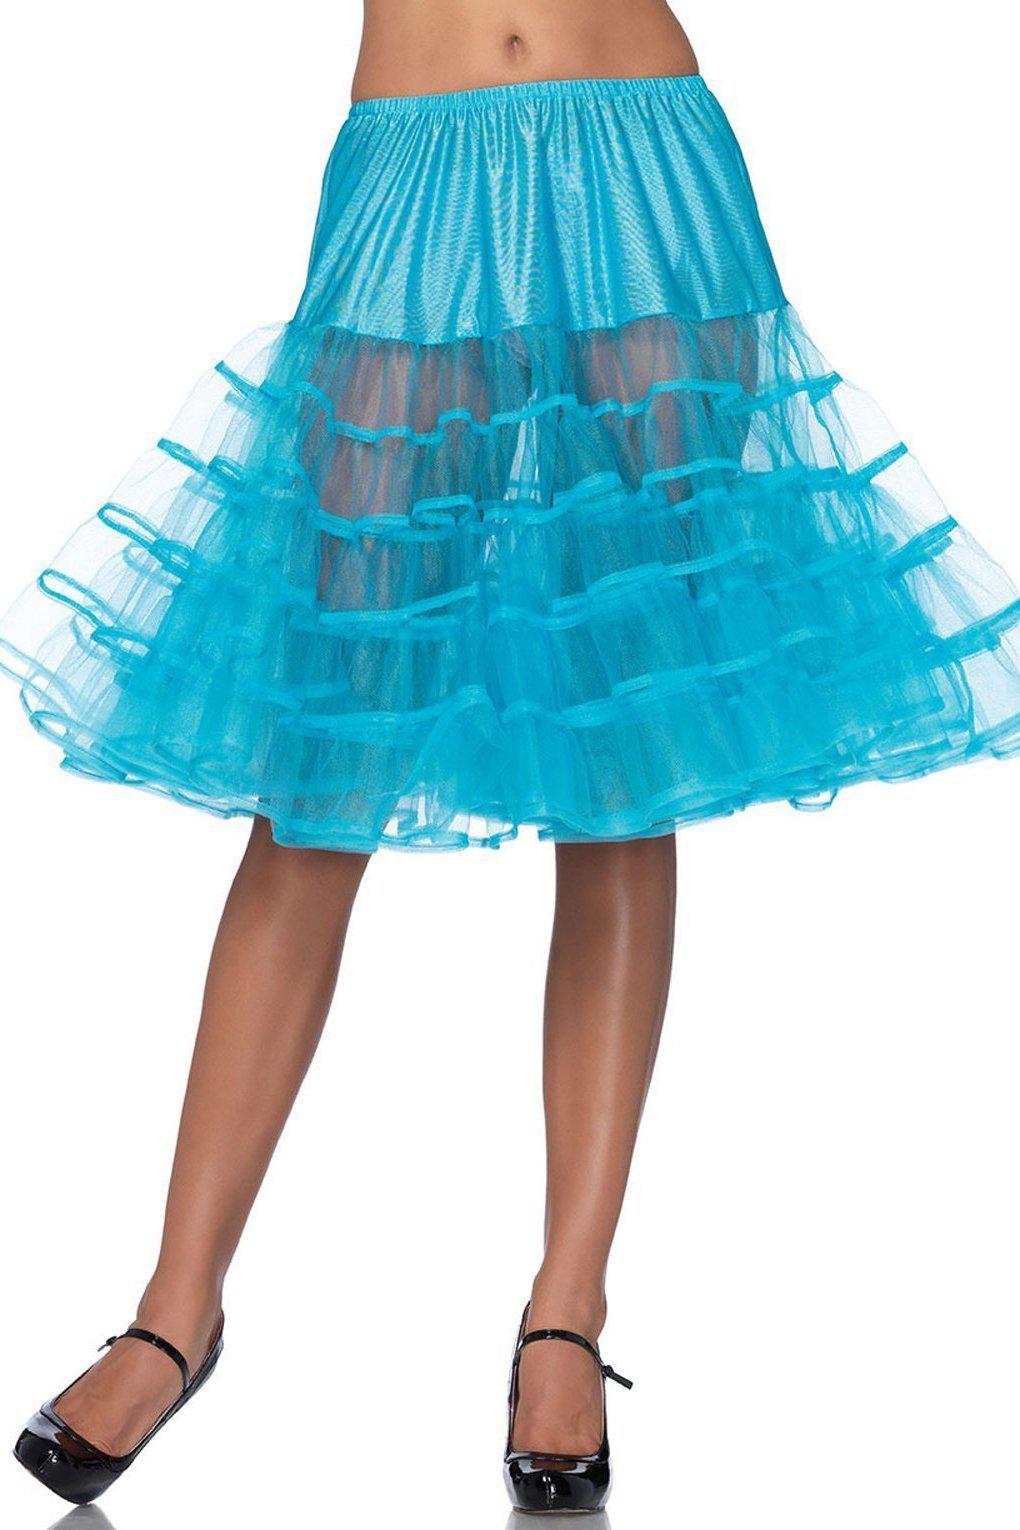 Mid-Length Petticoat-TuTu + Petticoat-Leg Avenue-Turquoise-O/S-SEXYSHOES.COM